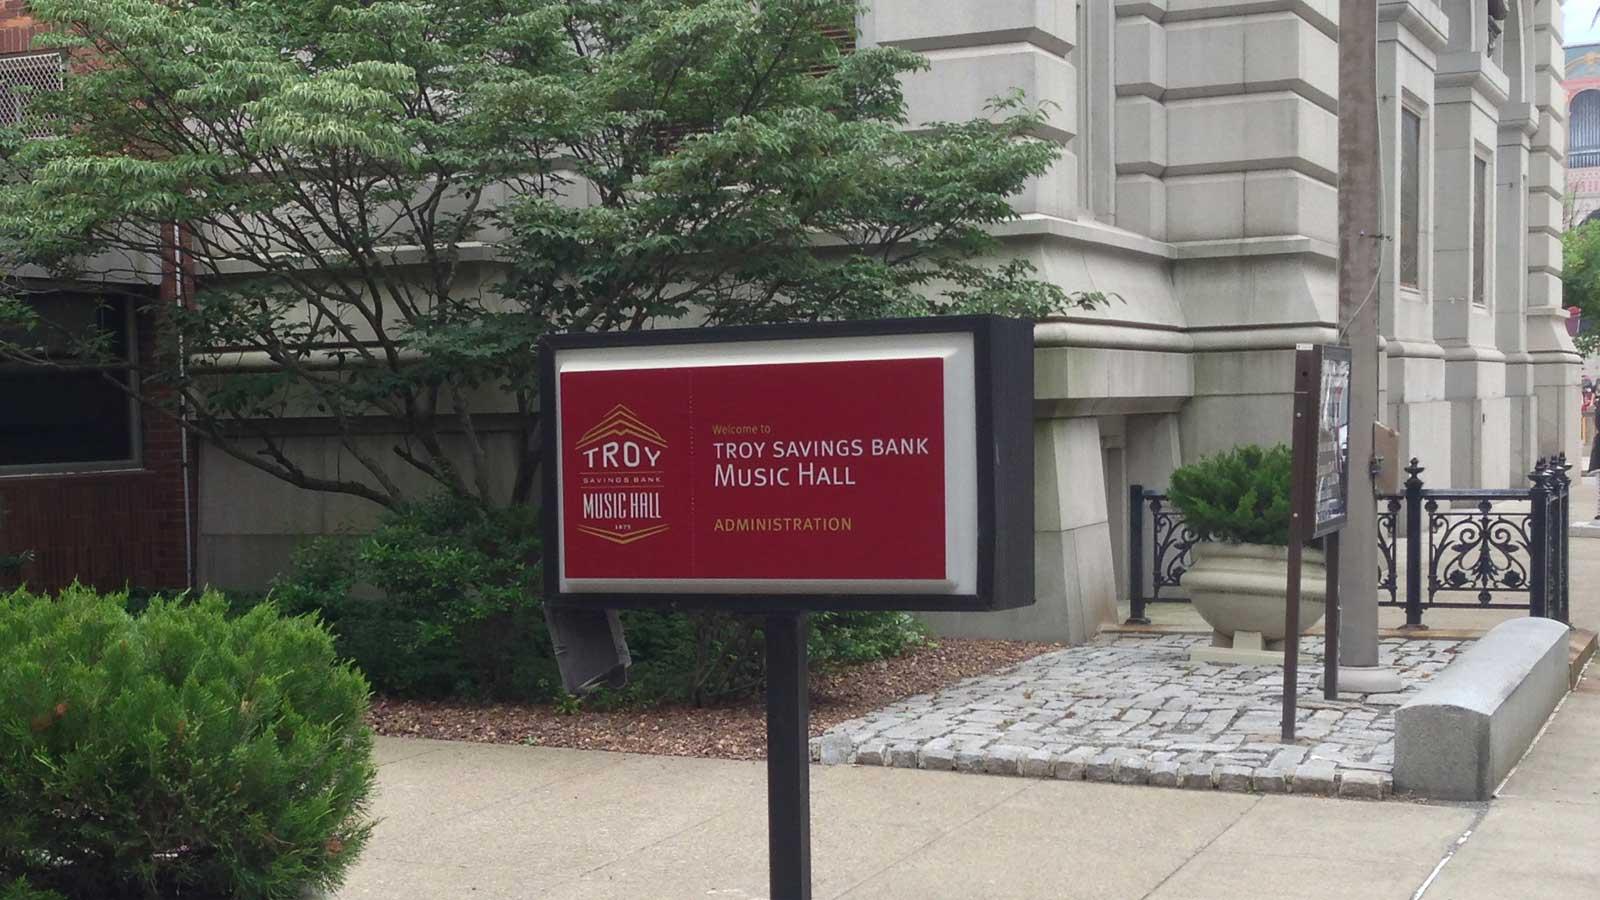 Troy Savings Bank Music Hall | exterior sign